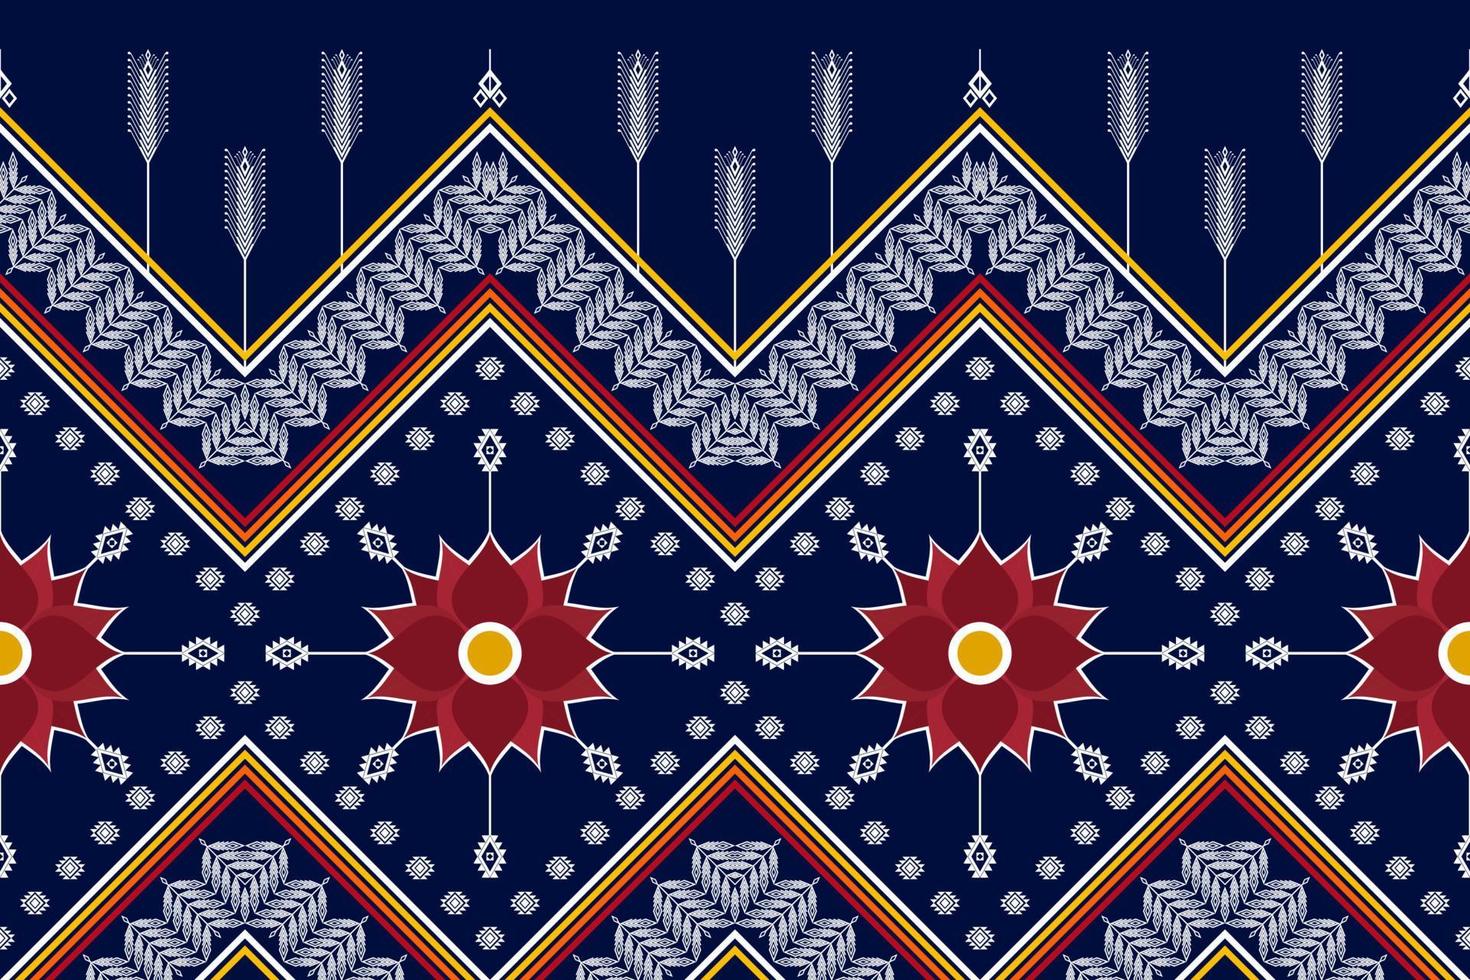 conception abstraite de motif ethnique géométrique. tapis en tissu aztèque ornement mandala boho natif chevron textile décoration papier peint. fond de vecteur de broderie traditionnelle ethnique tribale